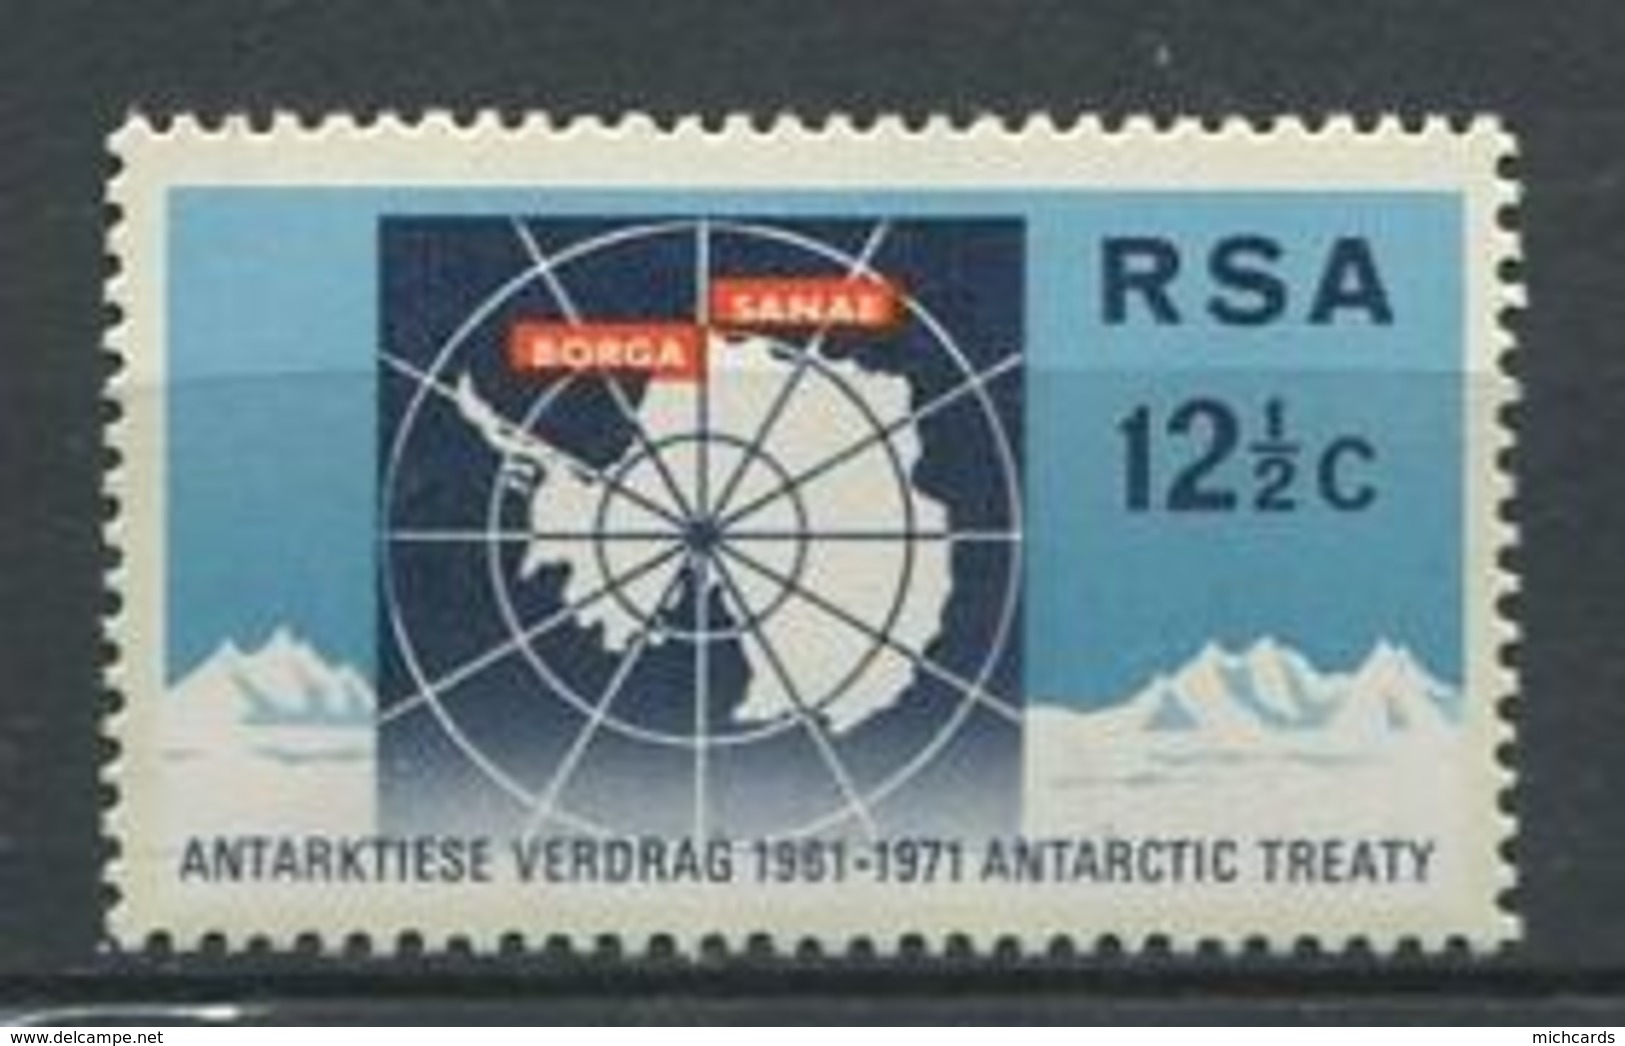 240 AFRIQUE DU SUD (RSA) 1971 - Yvert 329 - Antarctique Polaire Carte - Neuf ** (MNH) Sans Charniere - Unused Stamps